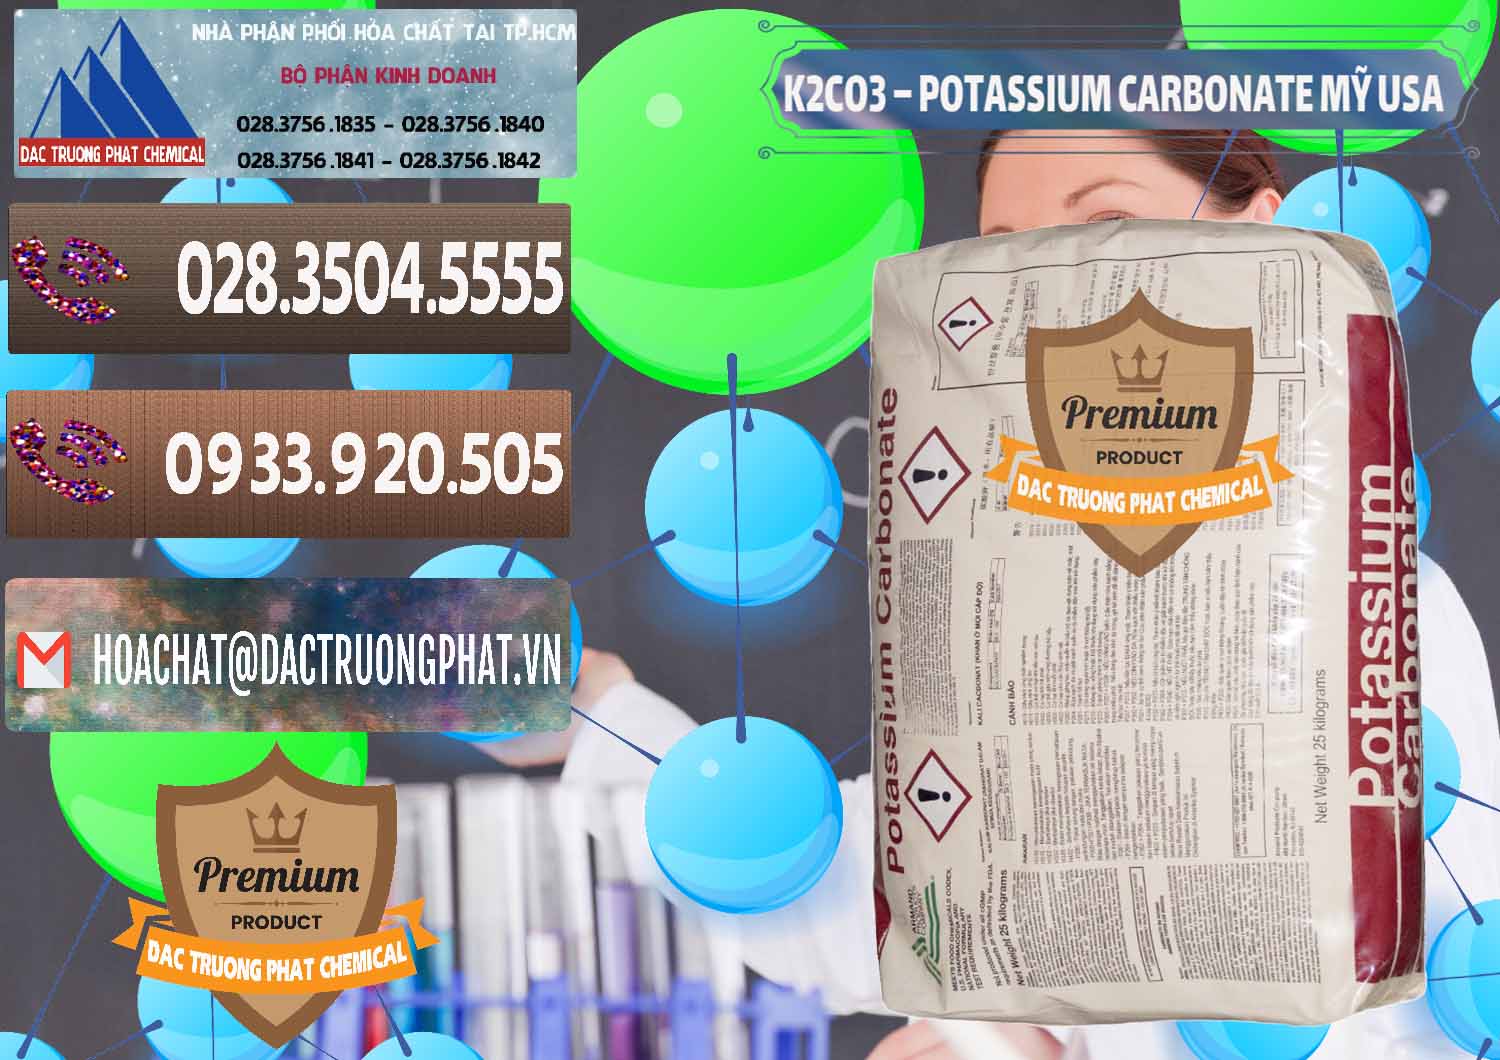 Nơi chuyên phân phối và bán K2Co3 – Potassium Carbonate Mỹ USA - 0082 - Kinh doanh - cung cấp hóa chất tại TP.HCM - hoachatviet.net